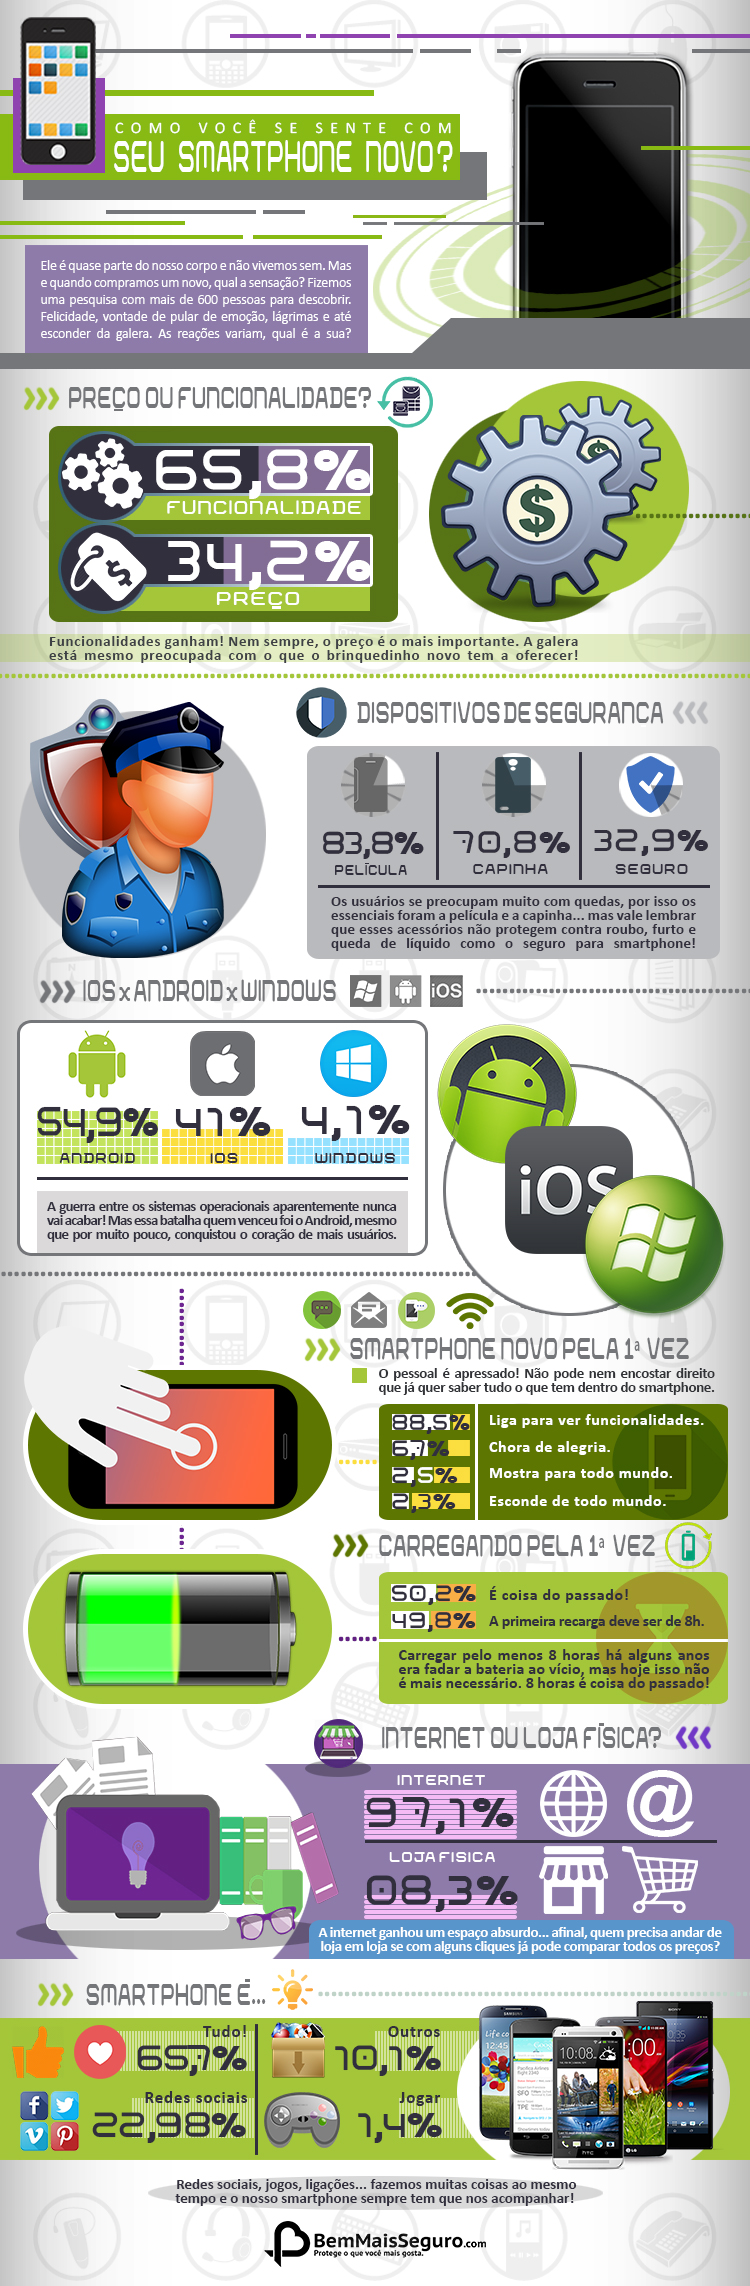 infográfico sobre como as pessoas se sentem com um smartphone novo